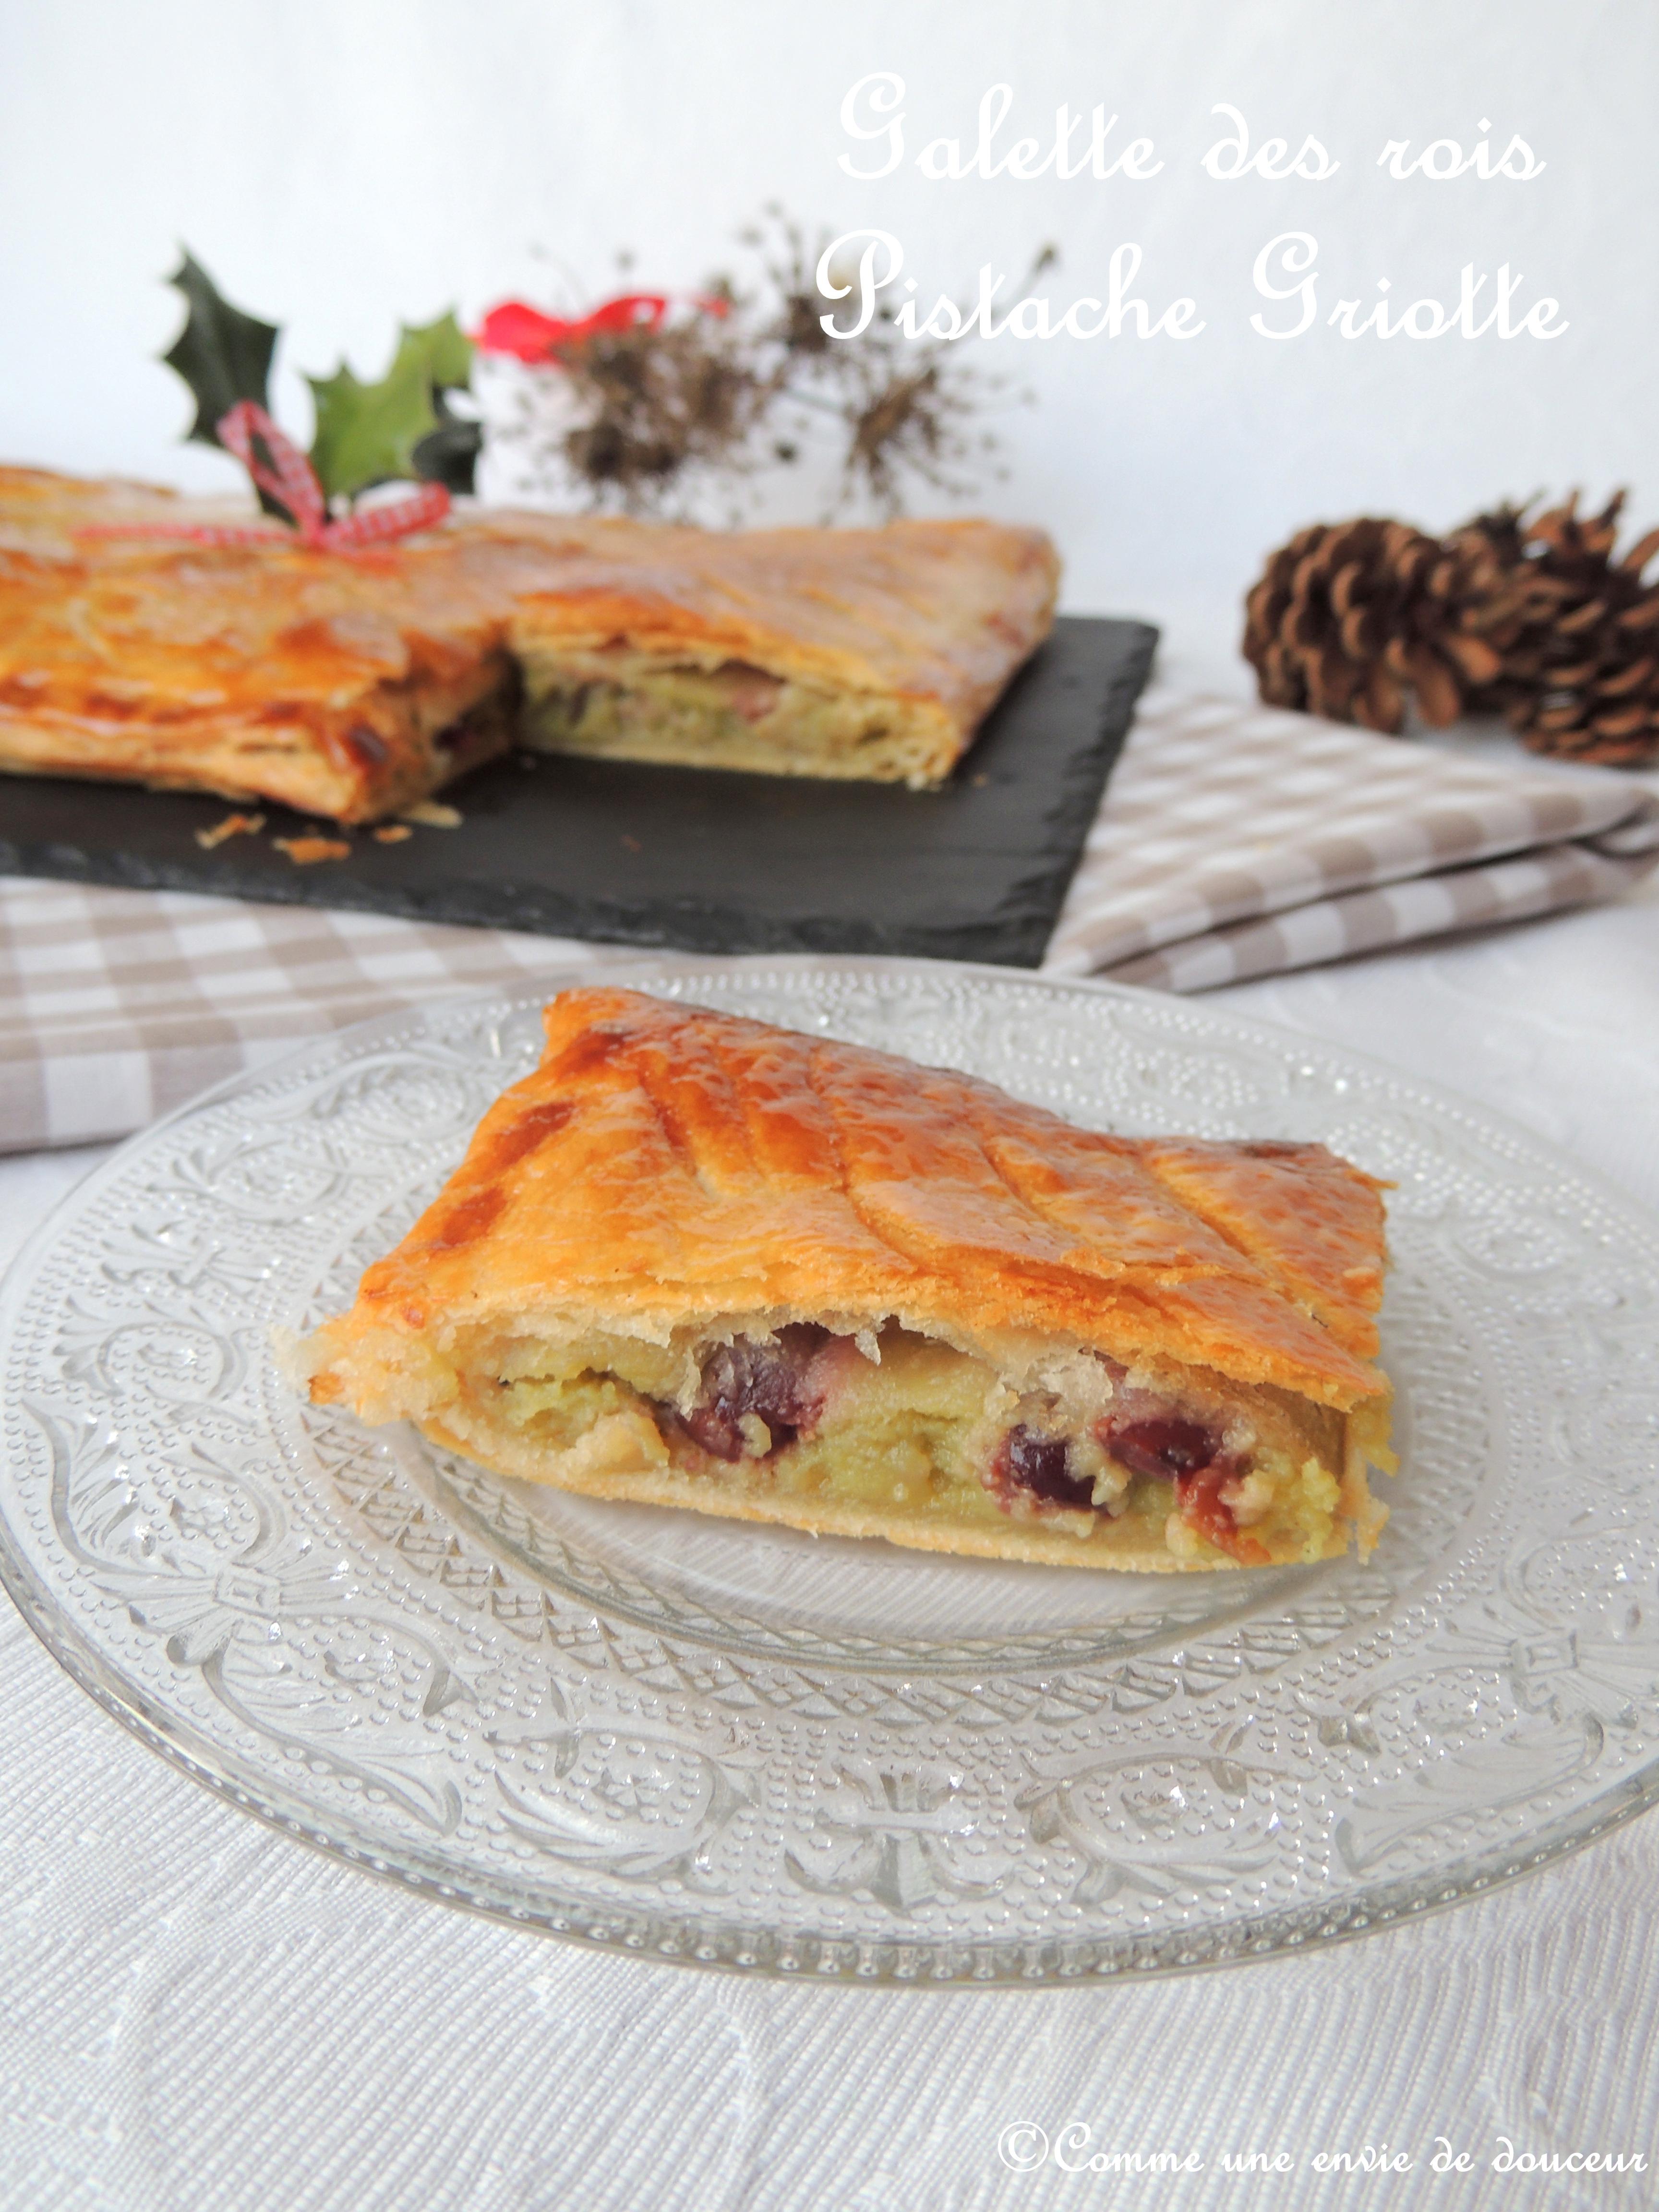 Galette des rois pistache griotte – Pistachio & cherry king’s cake